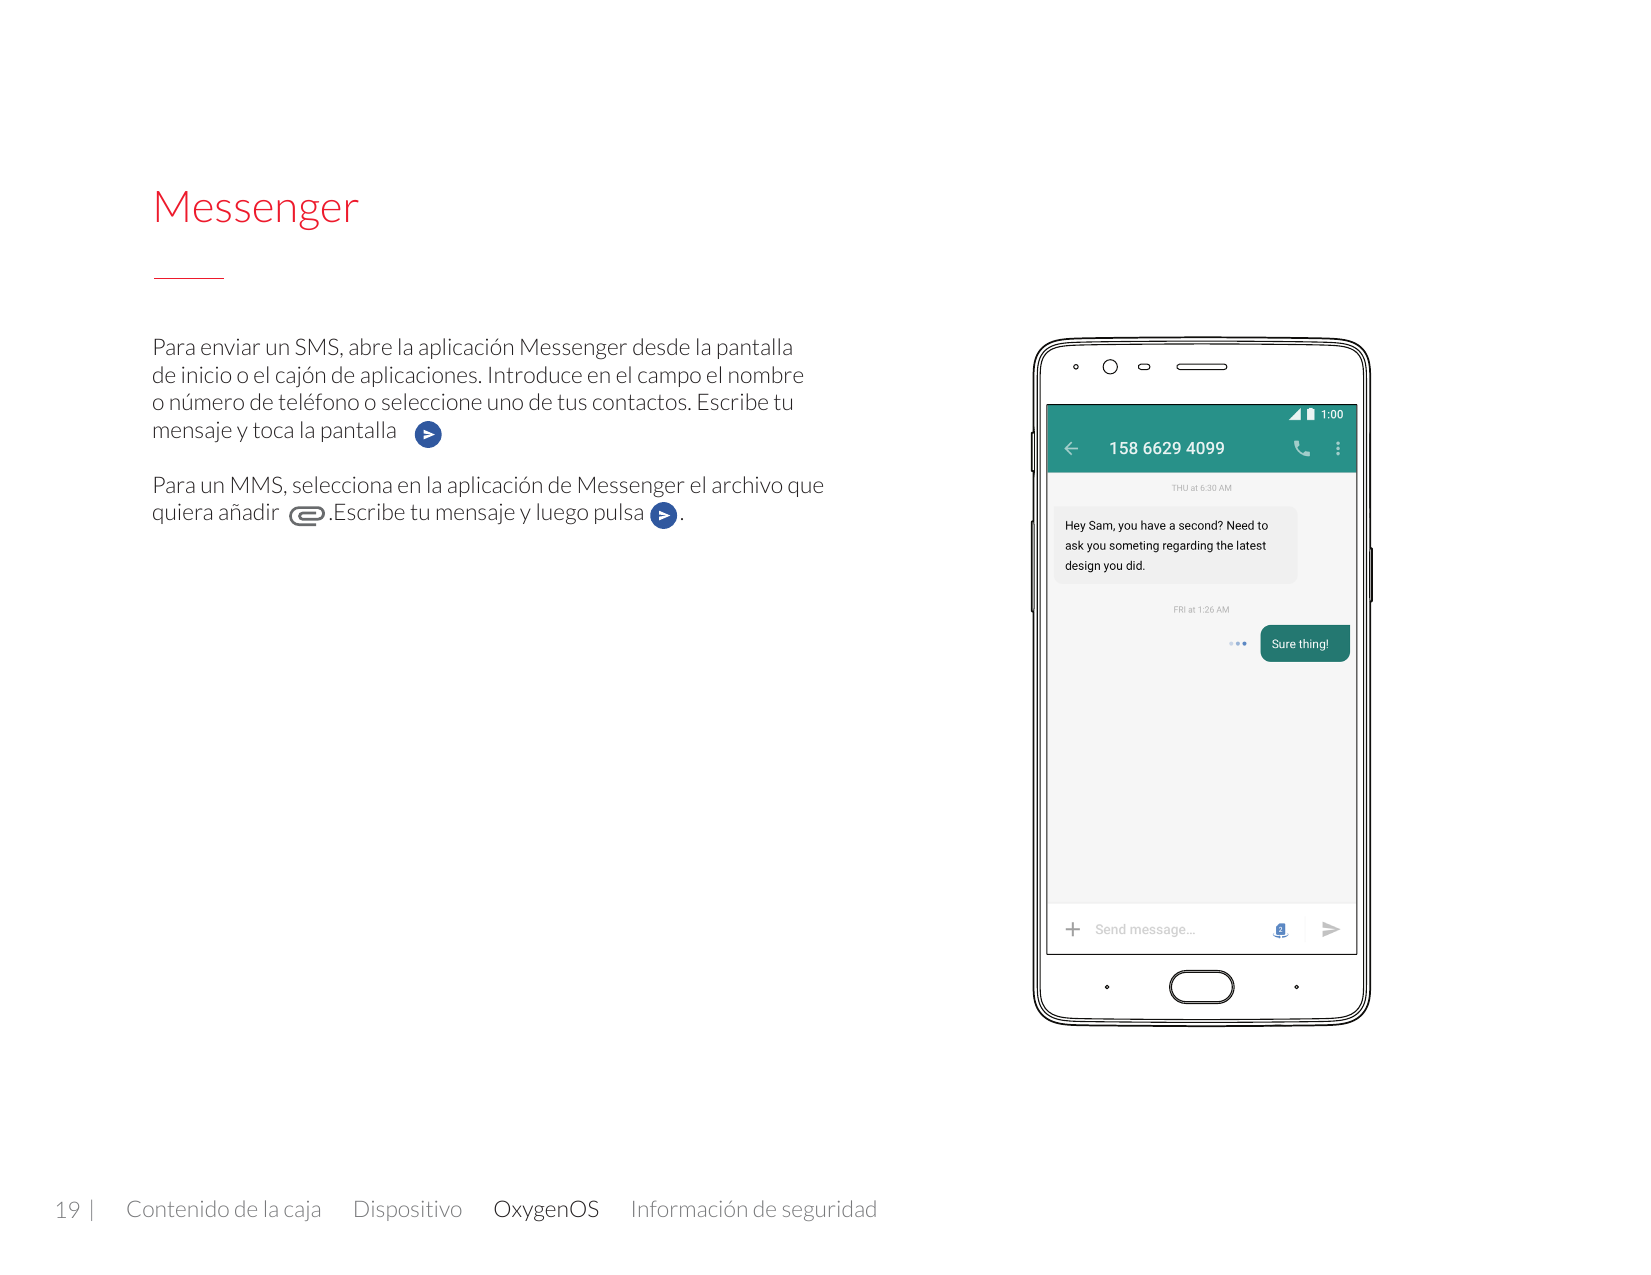 MessengerPara enviar un SMS, abre la aplicación Messenger desde la pantallade inicio o el cajón de aplicaciones. Introduce en el